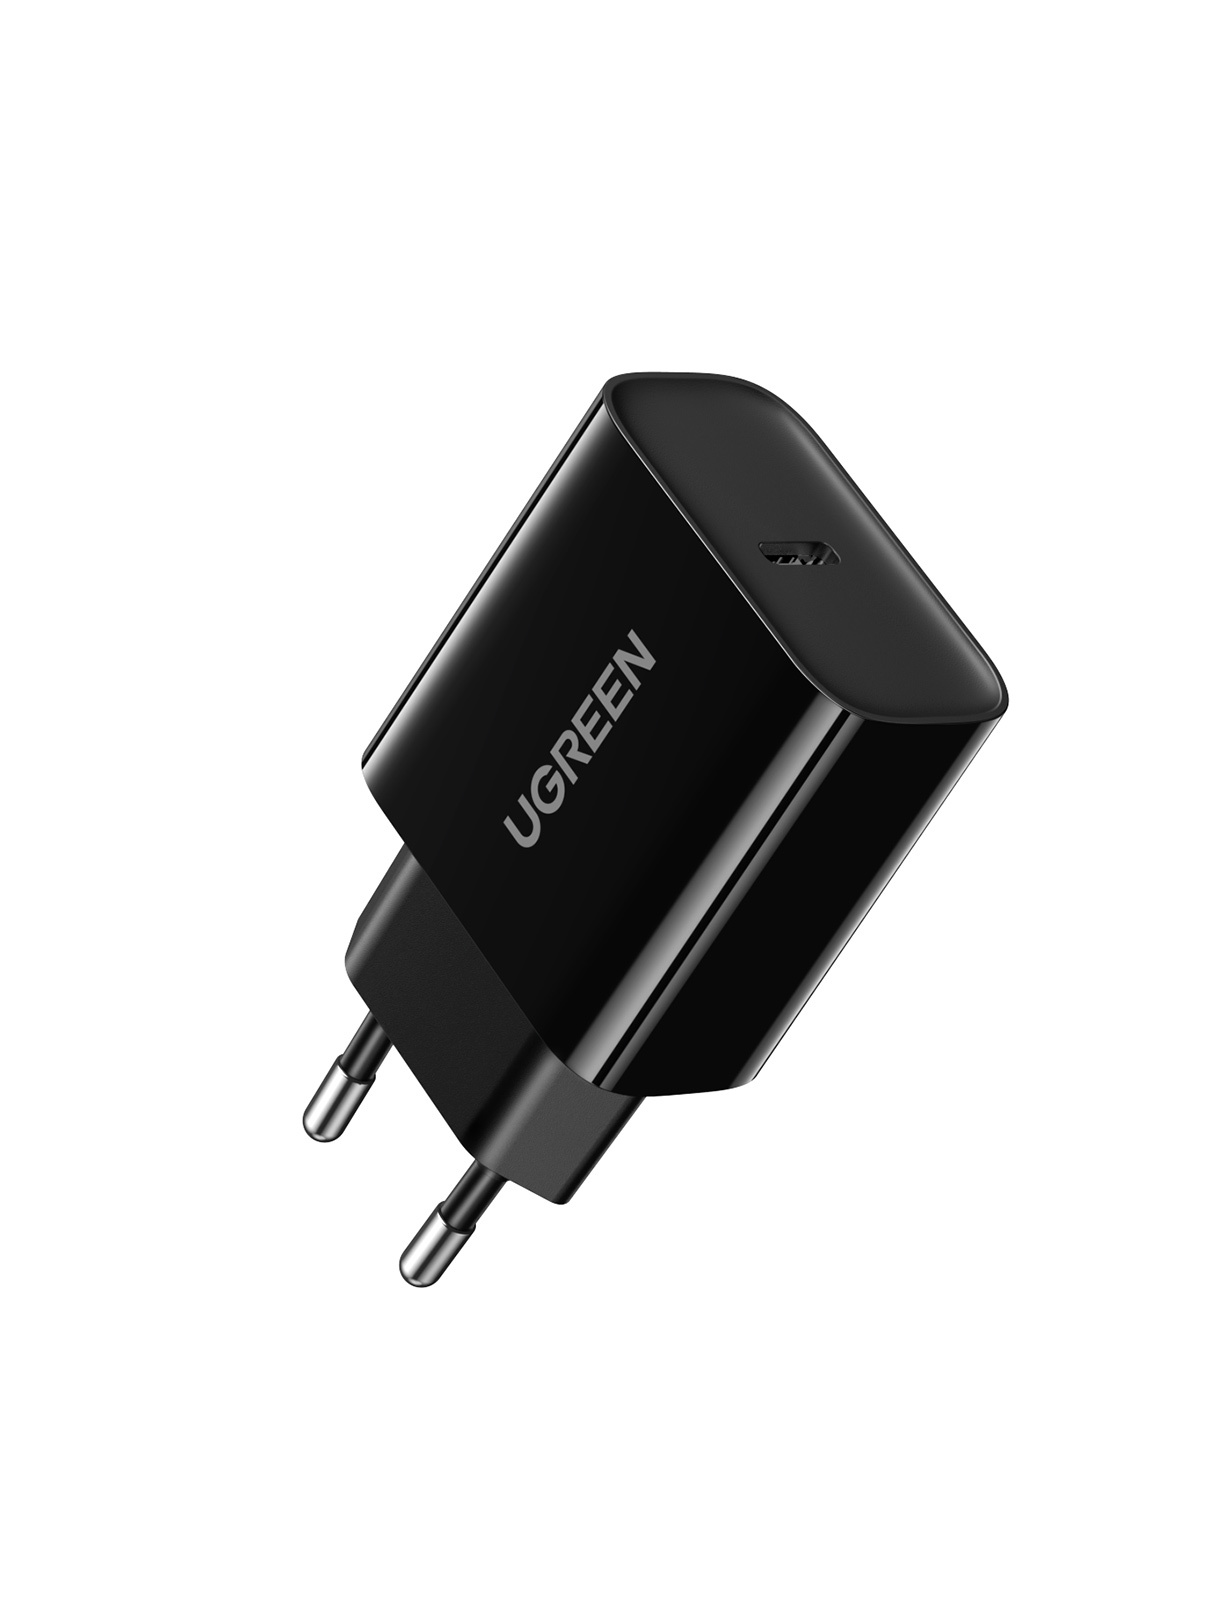 Сетевое зарядное устройство UGREEN CD137 USB-C PD 20Вт, цвет черный (10191) цена и фото